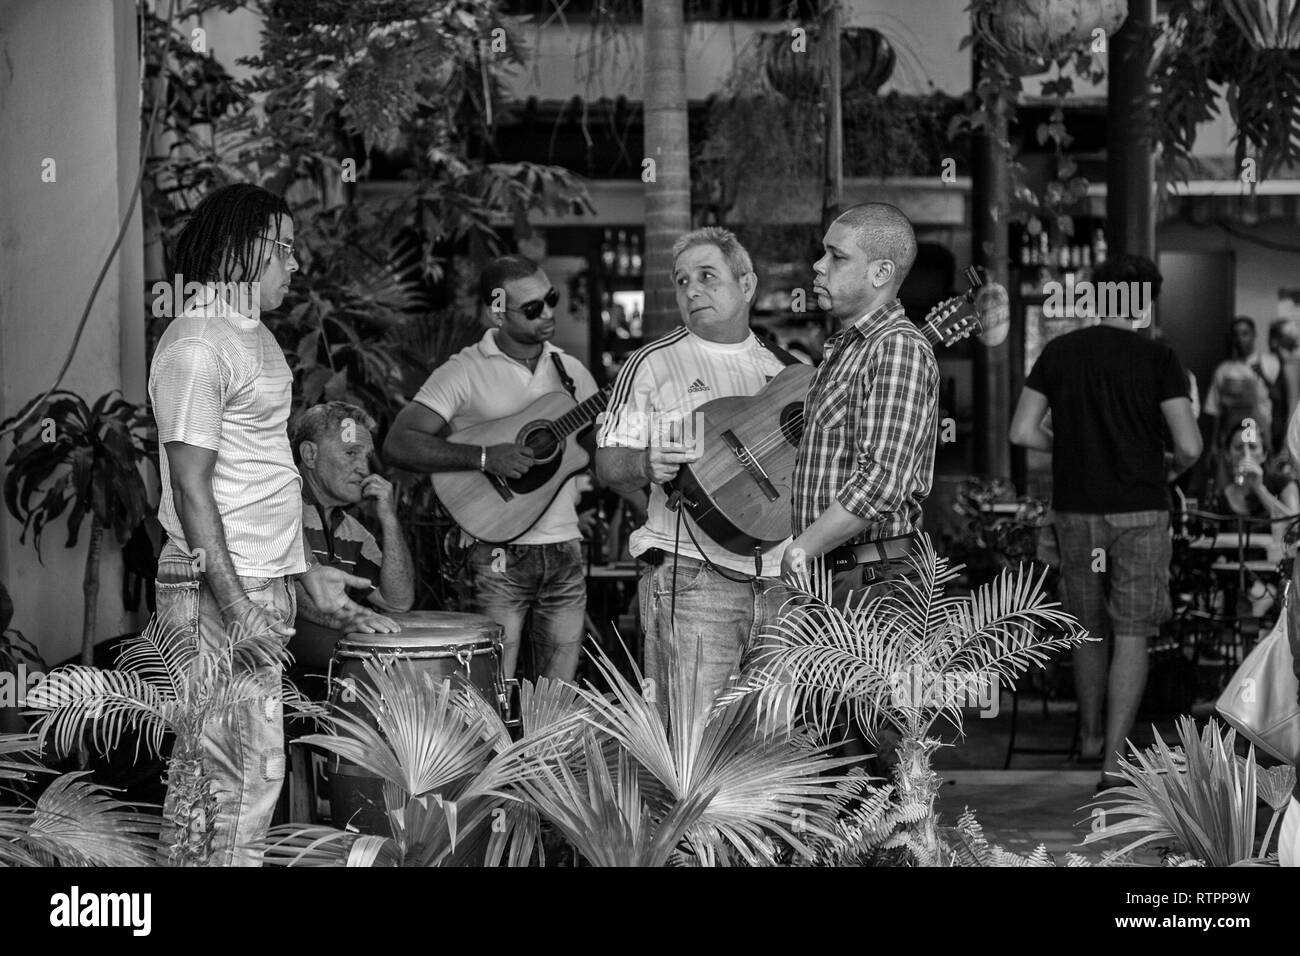 La Havane, Cuba - 06 janvier 2013 : une vue sur les rues de la ville avec des cubains. Des musiciens de rue prennent une pause. Banque D'Images